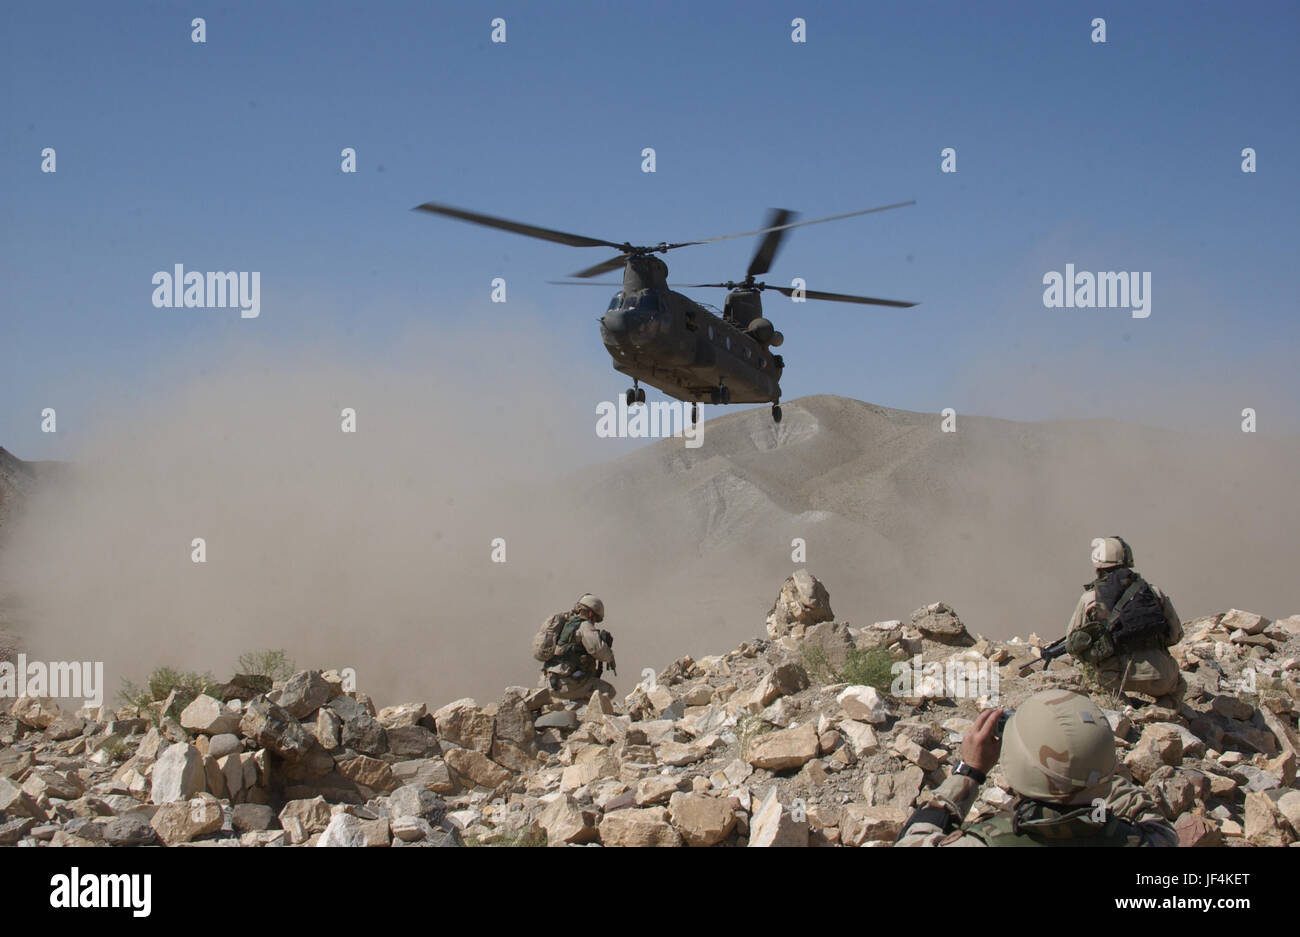 040906-A-7306A-148 di nubi di polvere sono cacciati dalla girante di lavaggio un CH-47 elicottero Chinook come viene in per un atterraggio per il ritiro delle forze di sicurezza nel corso di una missione umanitaria in Afghanistan il 7 settembre 6, 2004. I membri della famiglia dei soldati della Task Force hanno donato pirata scarpe, vestiti e cibo del quale sono stati distribuiti ai residenti di un villaggio chiamato Jegdalek in Afghanistan. DoD foto di Sgt. Michael Abney, U.S. Esercito. (Rilasciato) Foto Stock